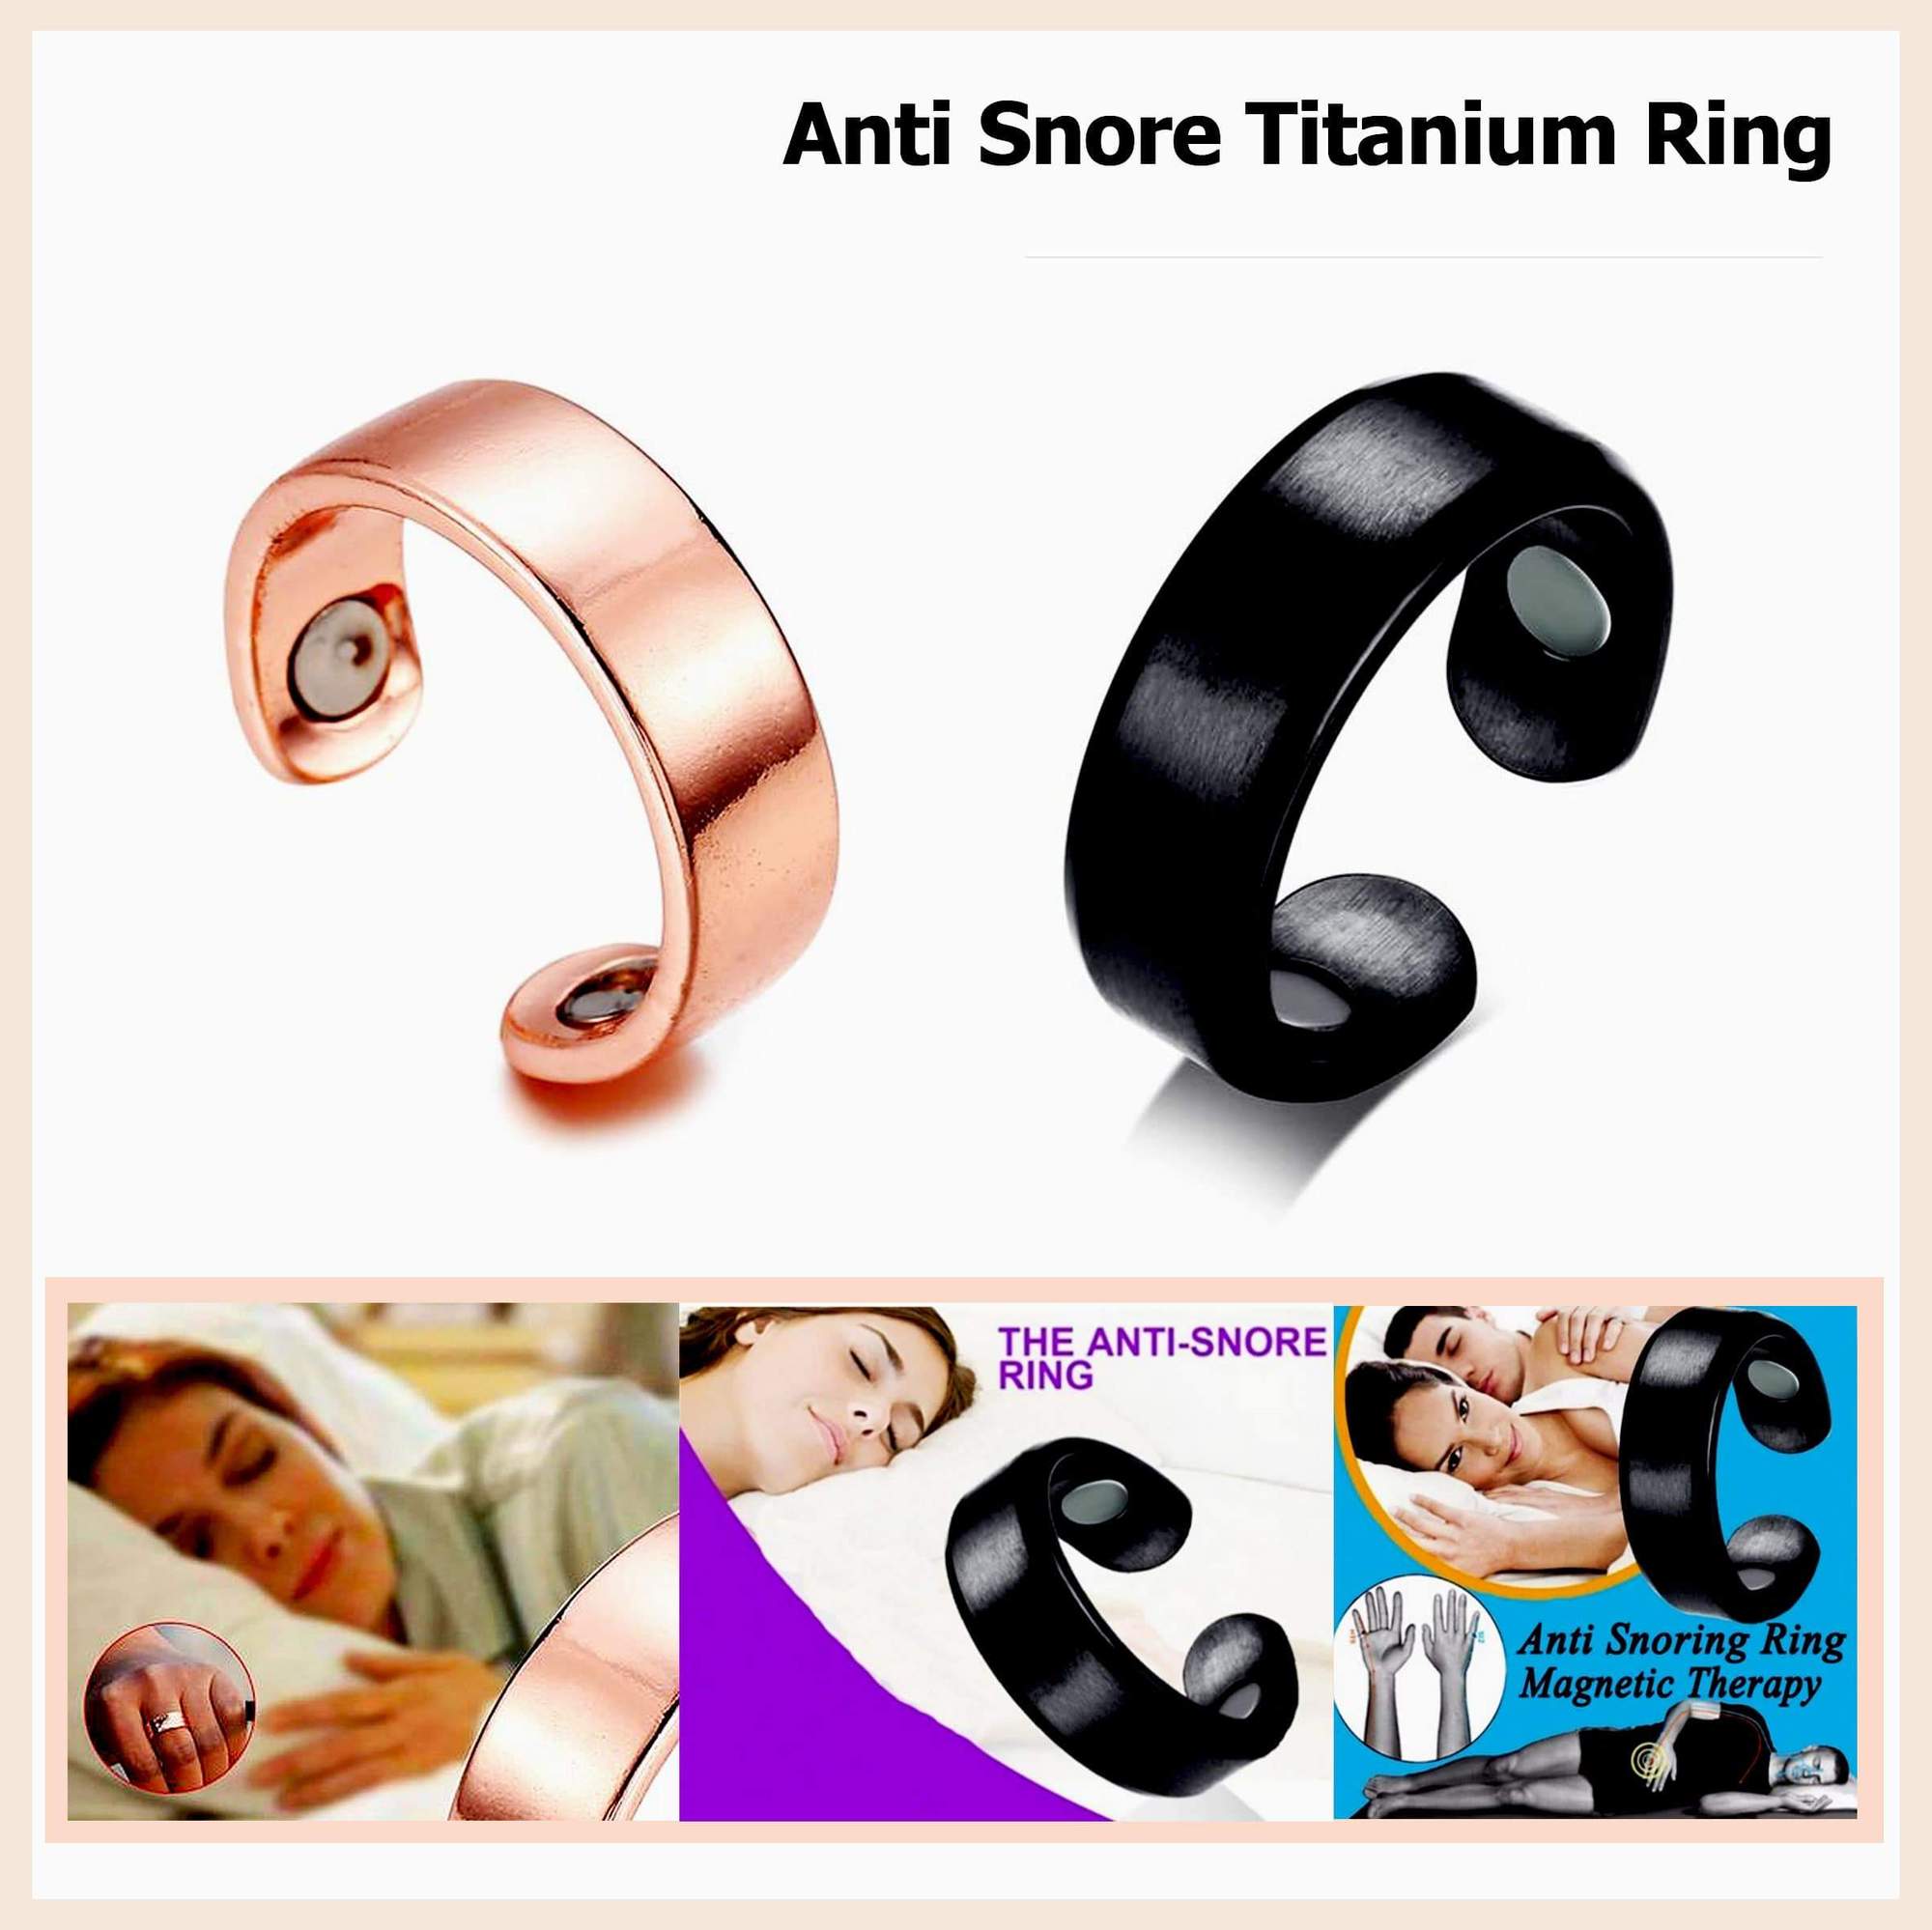 Anti Snore Titanium Ring